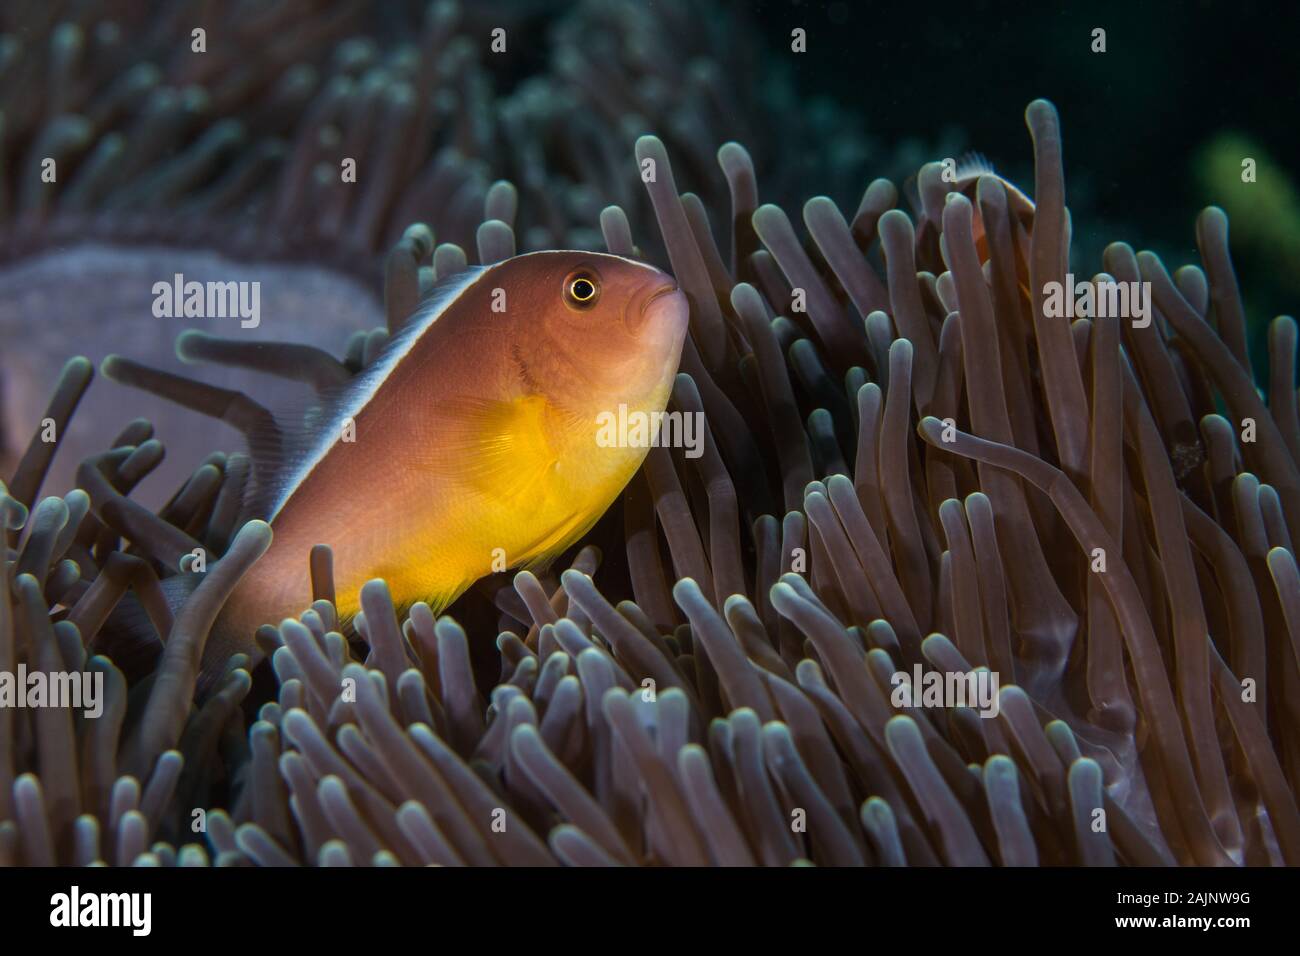 Nosestripe anemonefish o Skunk clownfish (Amphiprion akallopisos) nasconde nella sua anemone close up vista laterale. Foto Stock